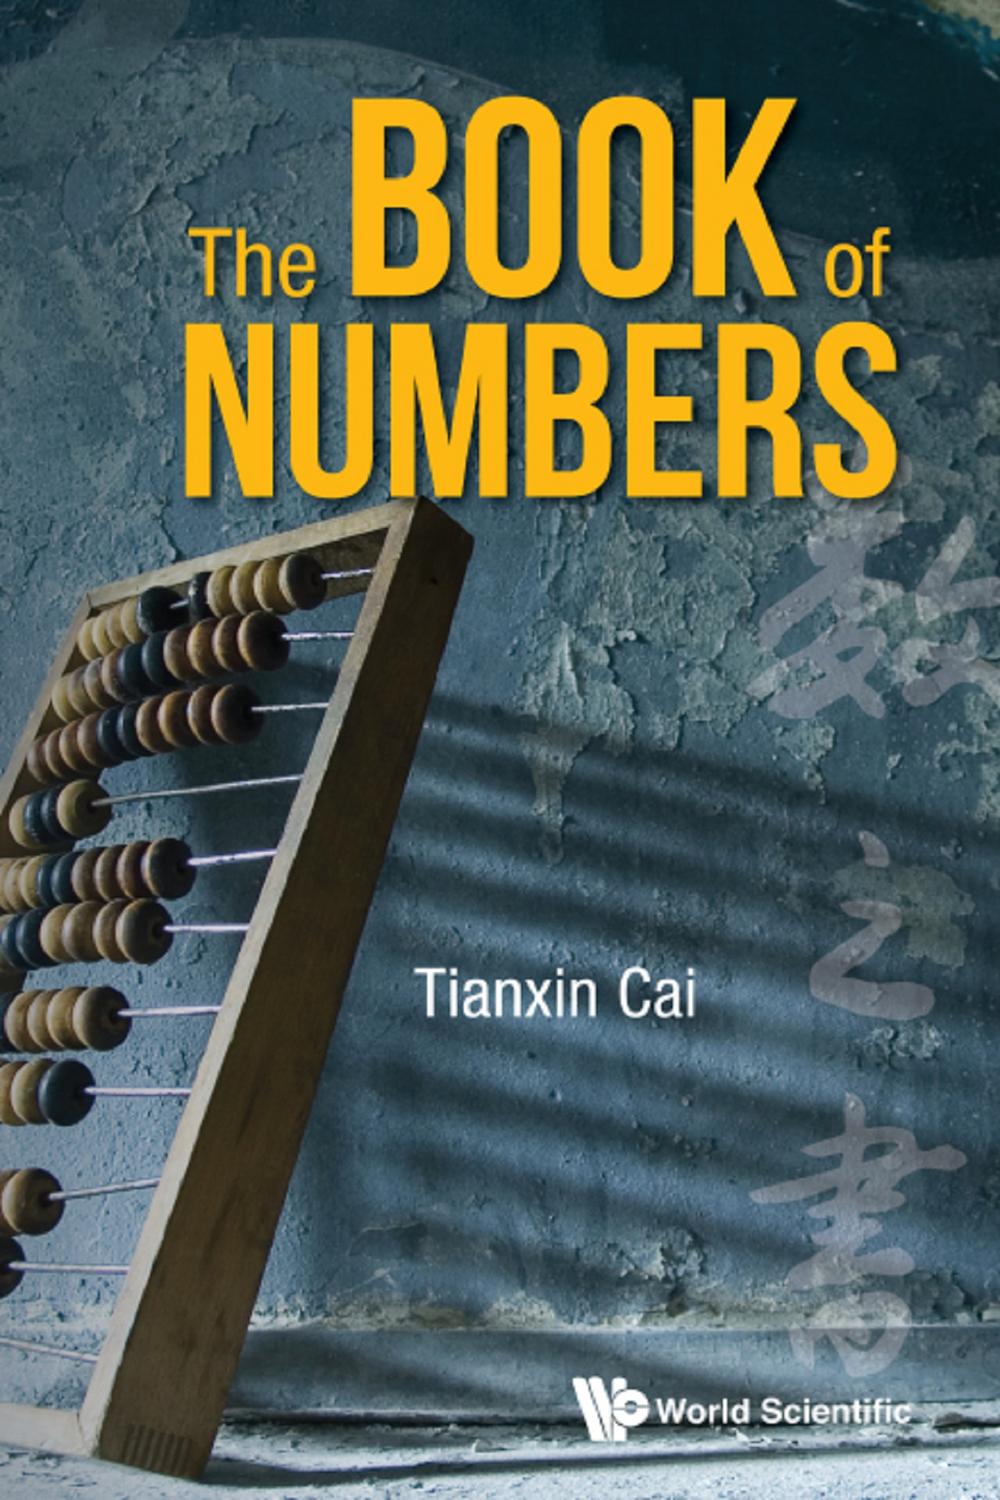 Book Of Numbers, The - Tianxin Cai, Jiu Ding